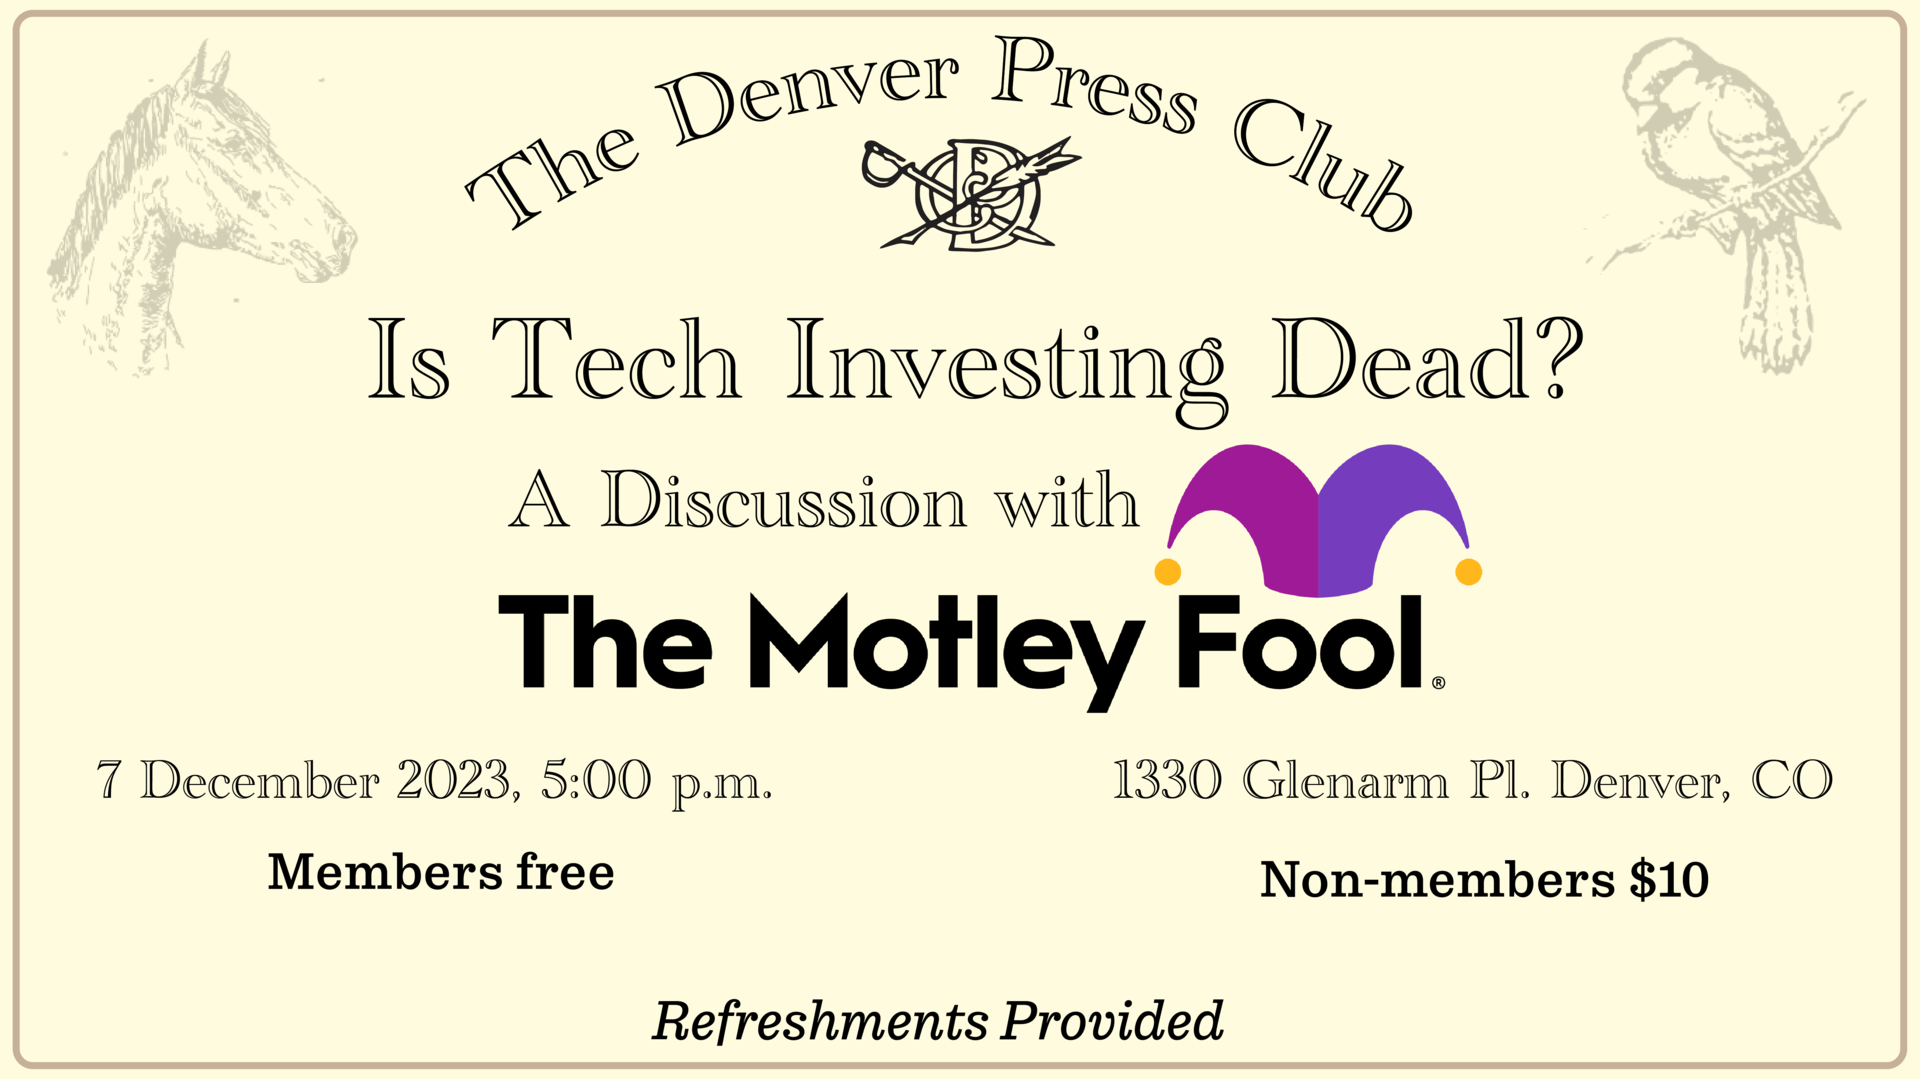  The Denver Press Club presents the Motley Fool